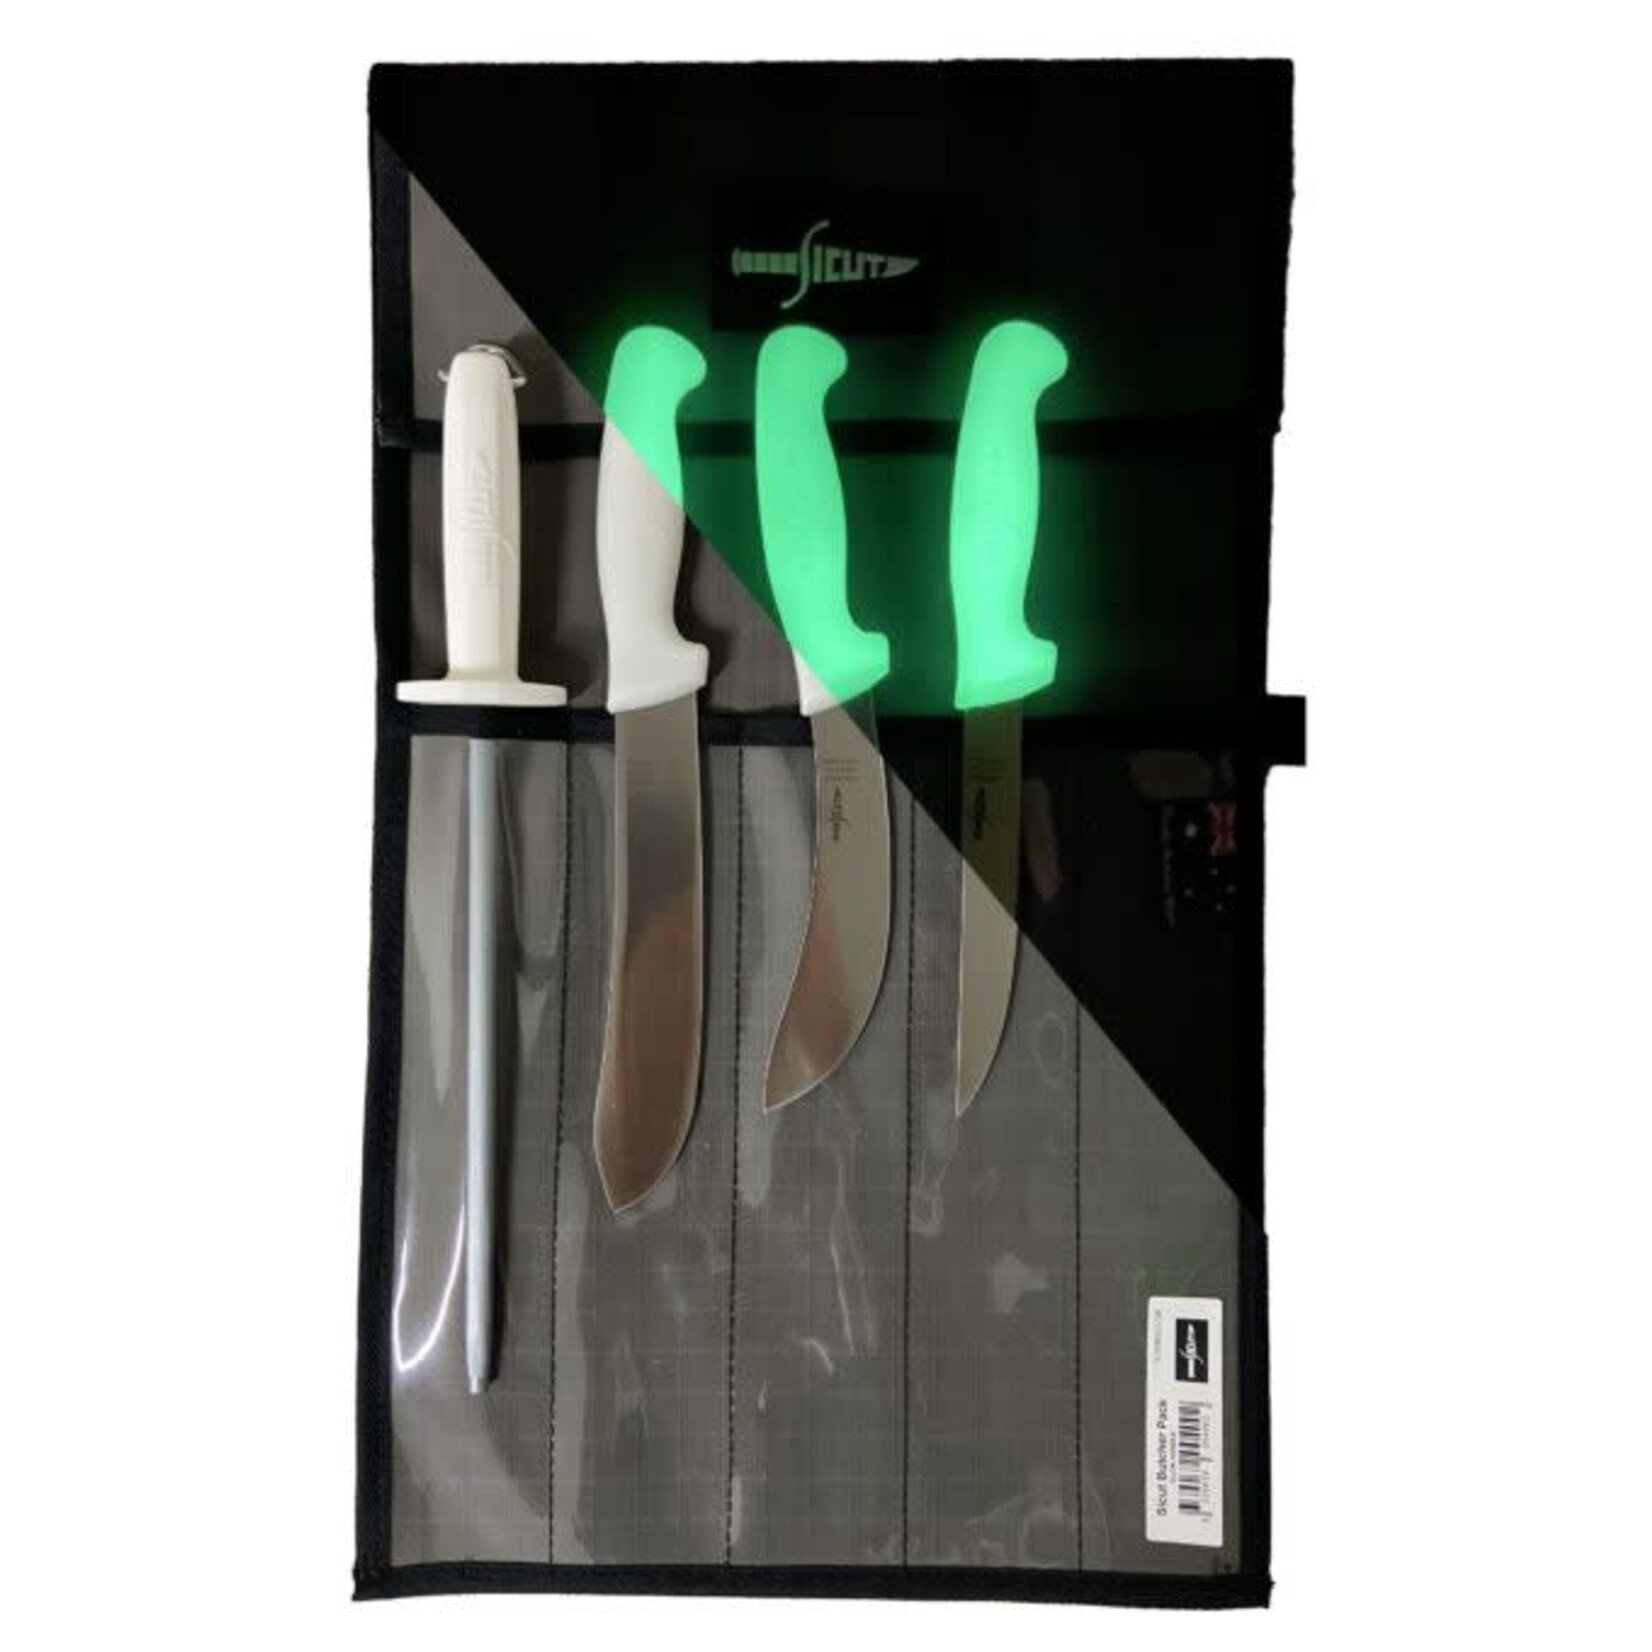 Sicut Sicut 3 Knife + Steel Butchering Package - Glow handles in Canvas Roll